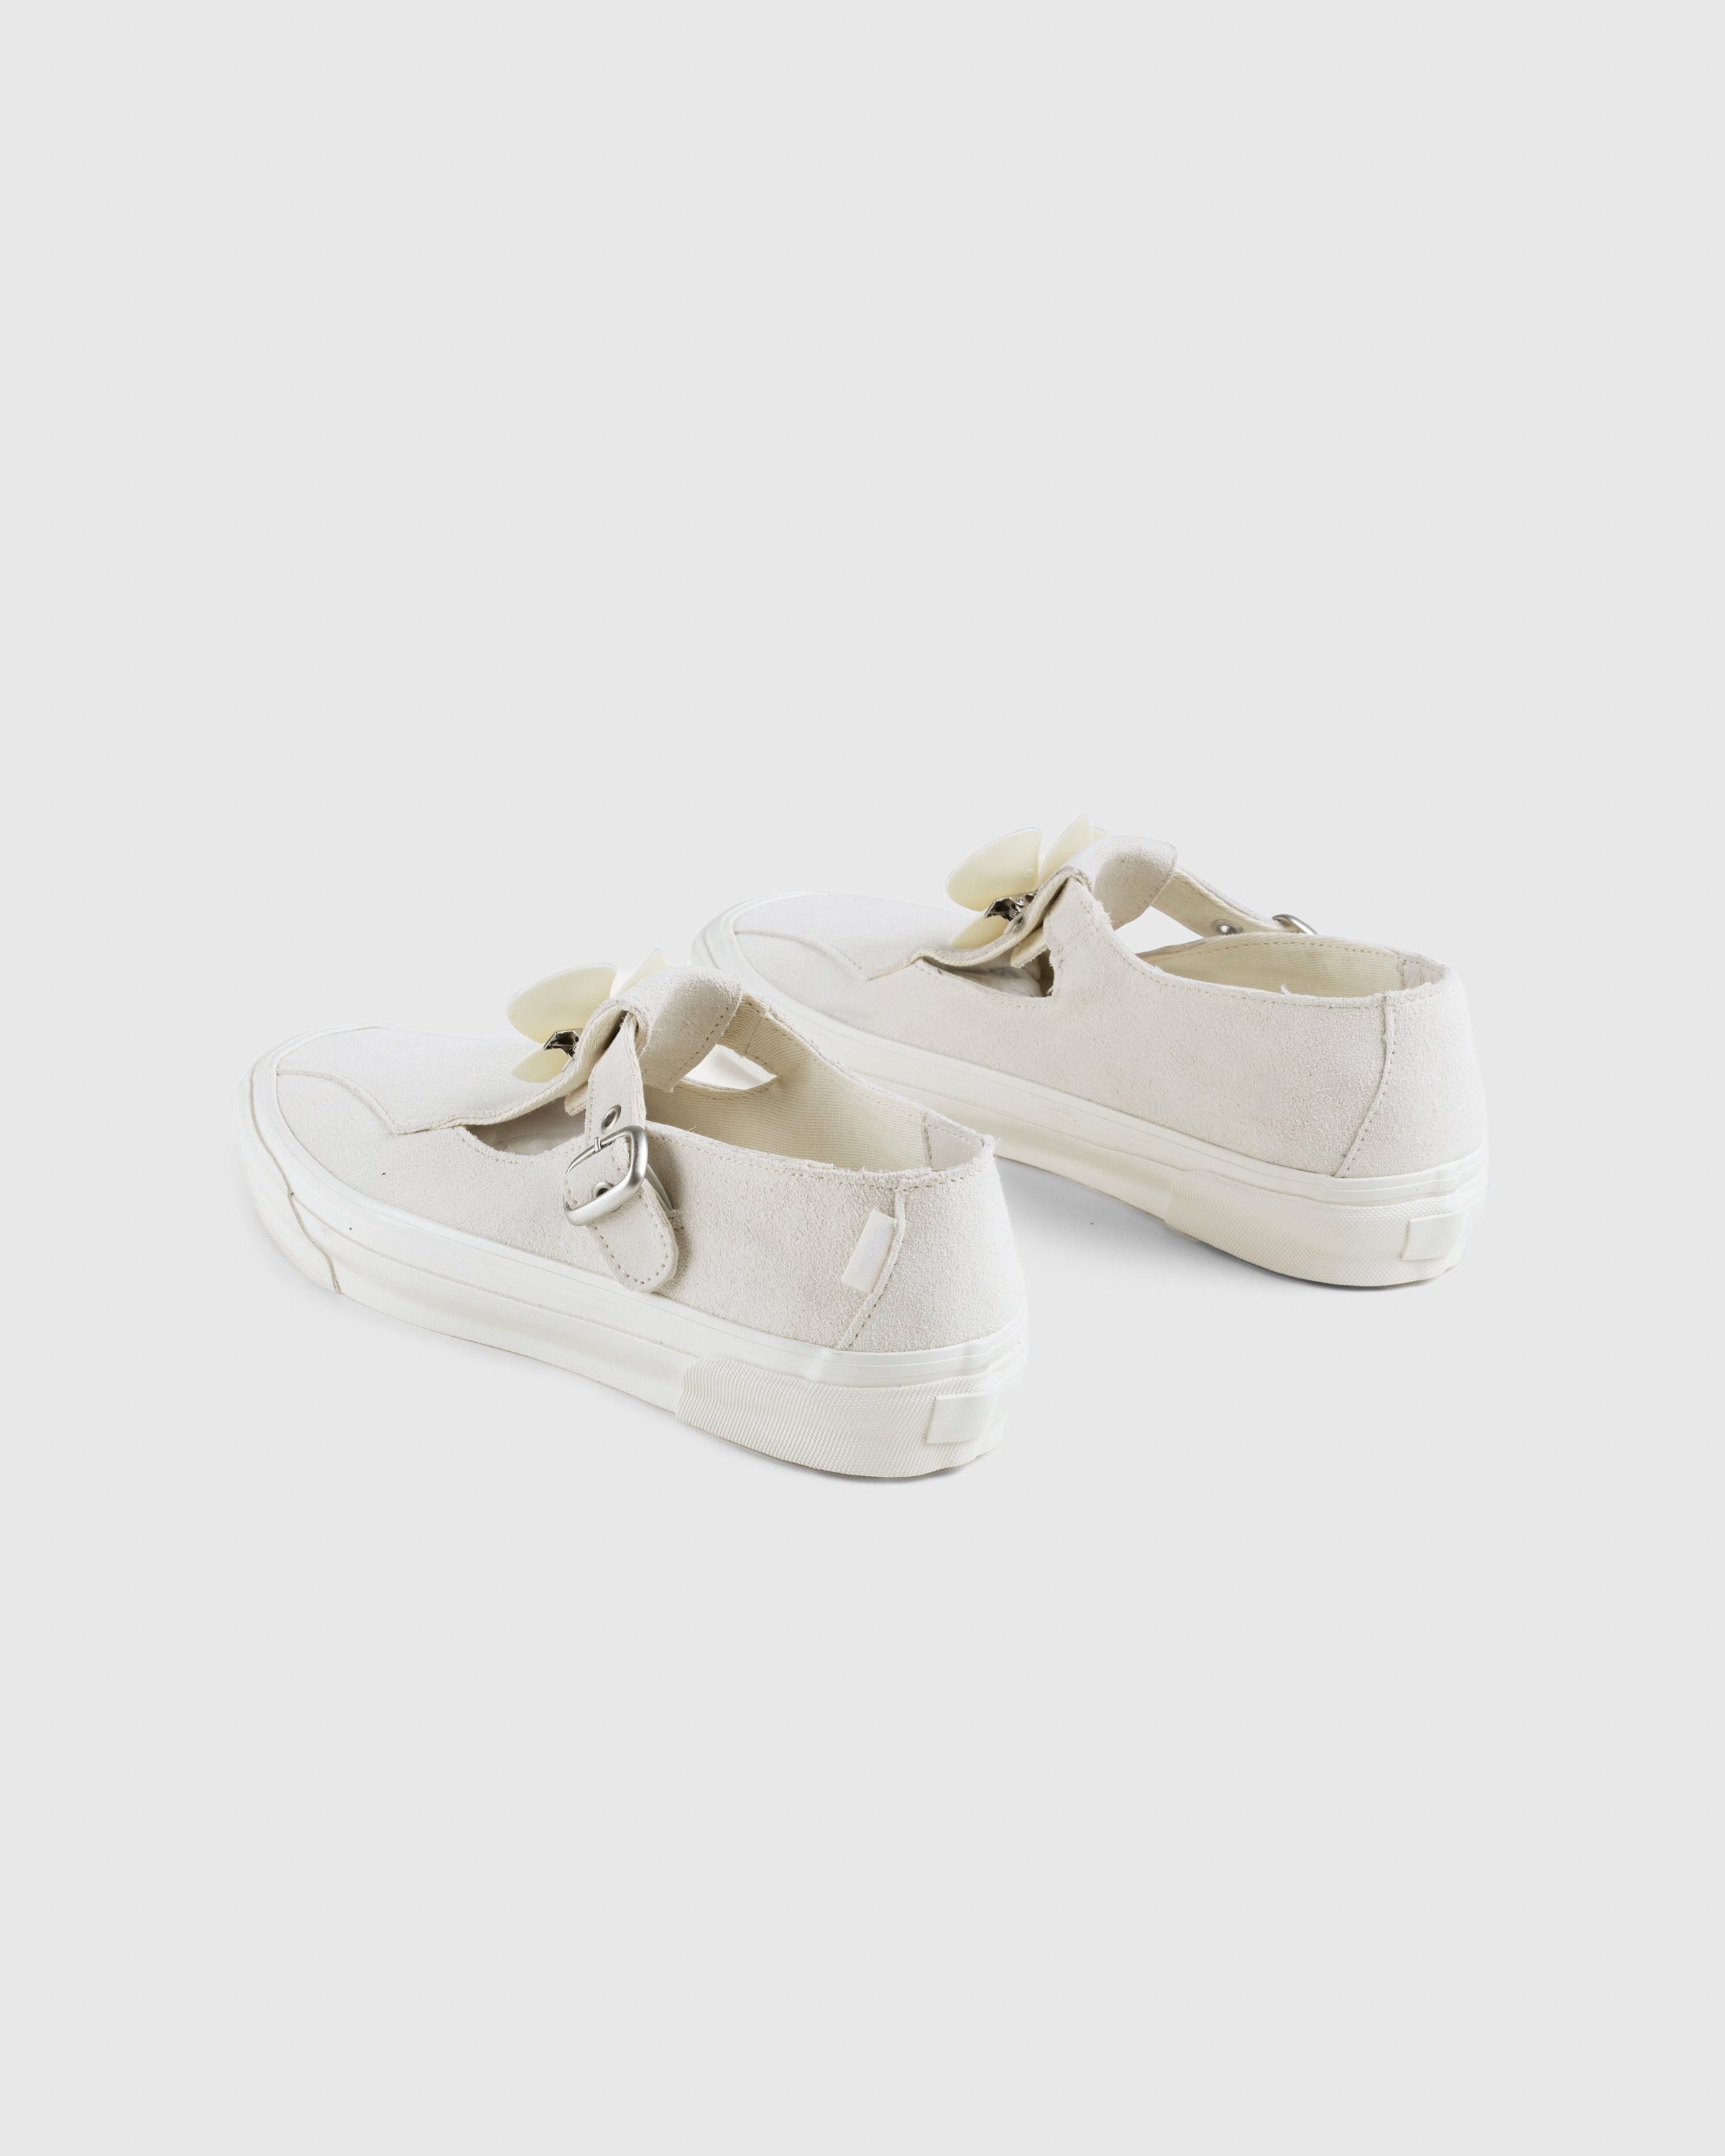 Vans - OG Style 93 LX Marshmallow - Footwear - White - Image 7